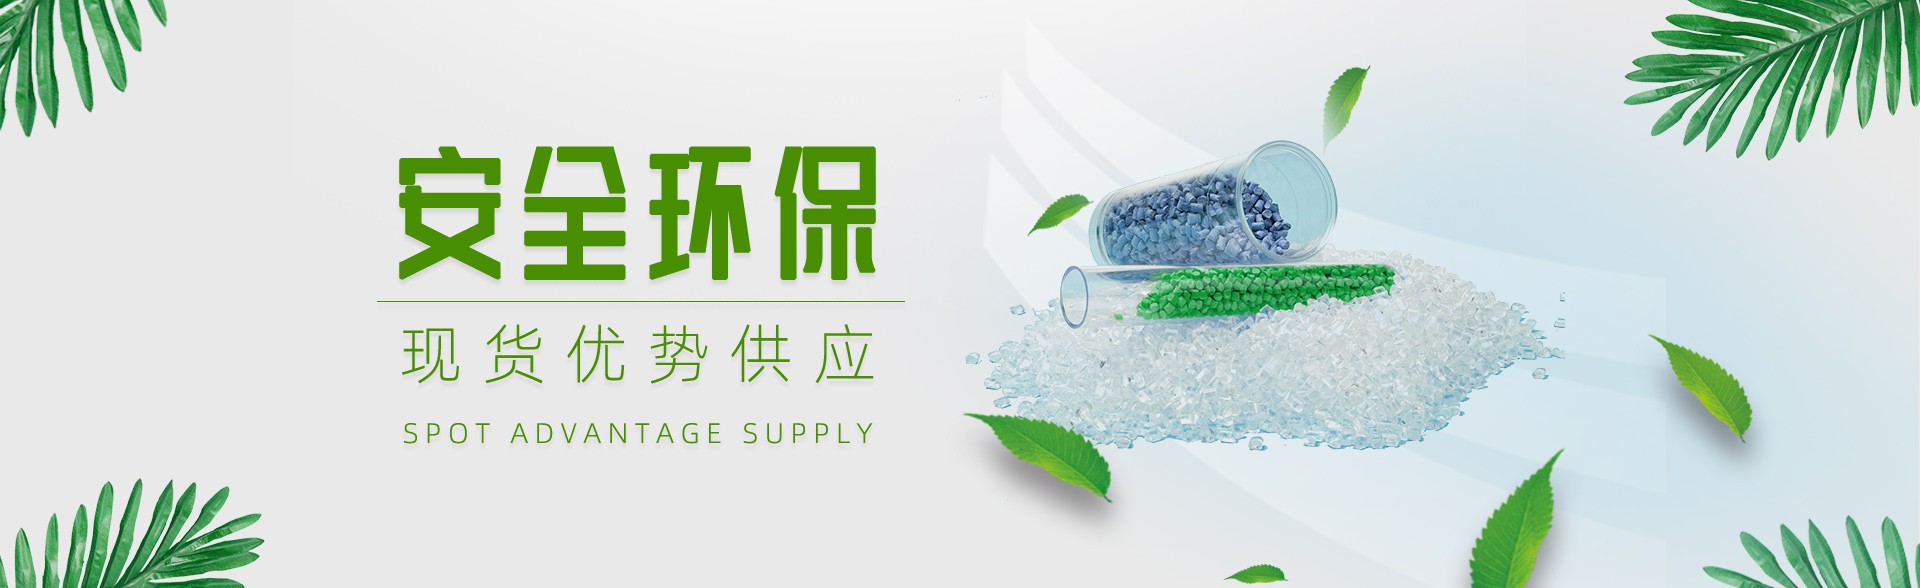 上海宇卿塑料制品有限公司